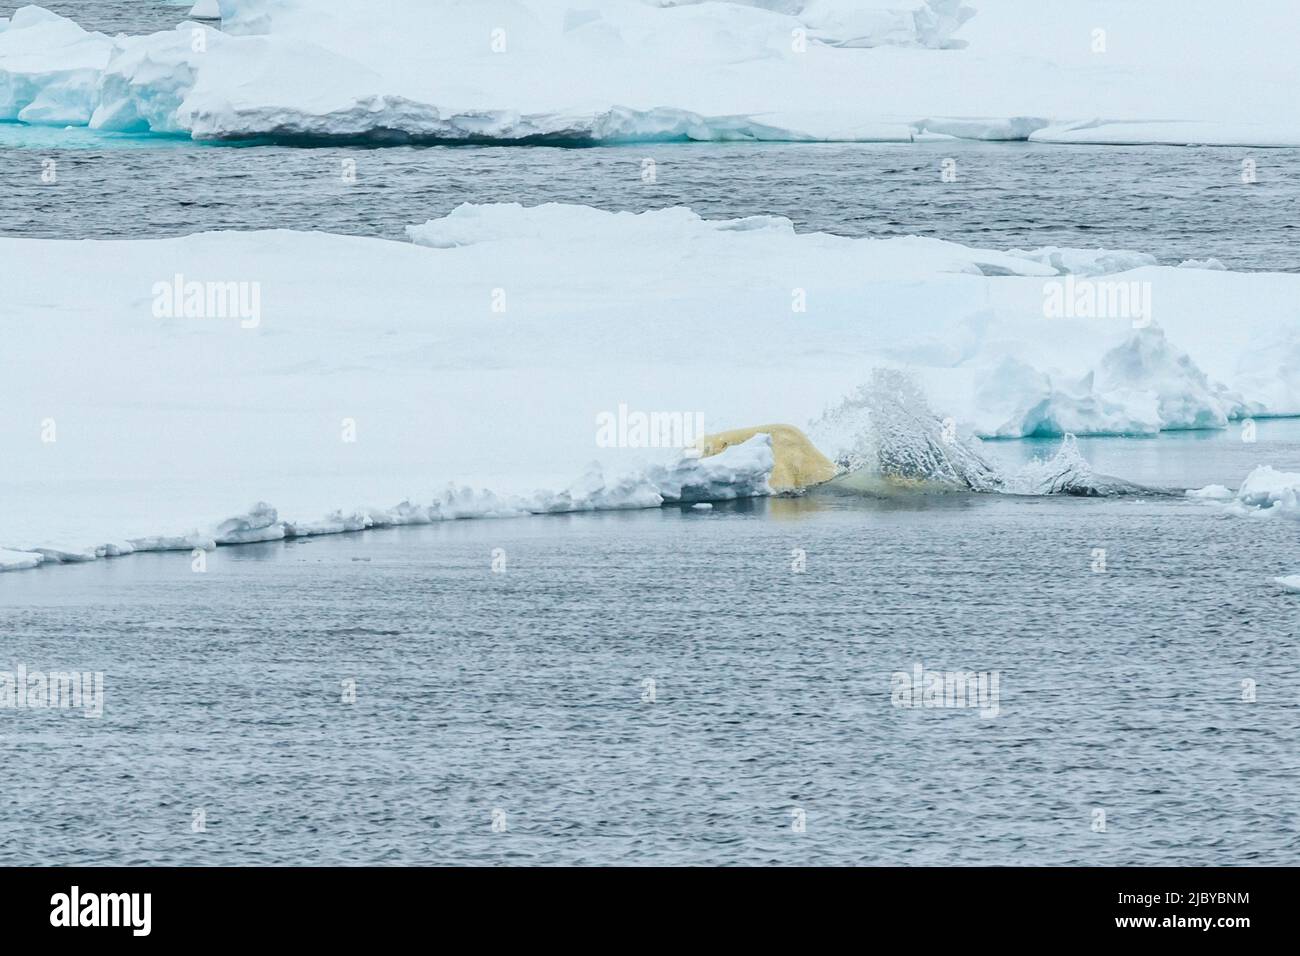 Secuencia de salto, oso polar (Ursus maritimus) saltando entre los flujos de hielo, reserva natural de Svalbard del noreste, Svalbard, Noruega Foto de stock